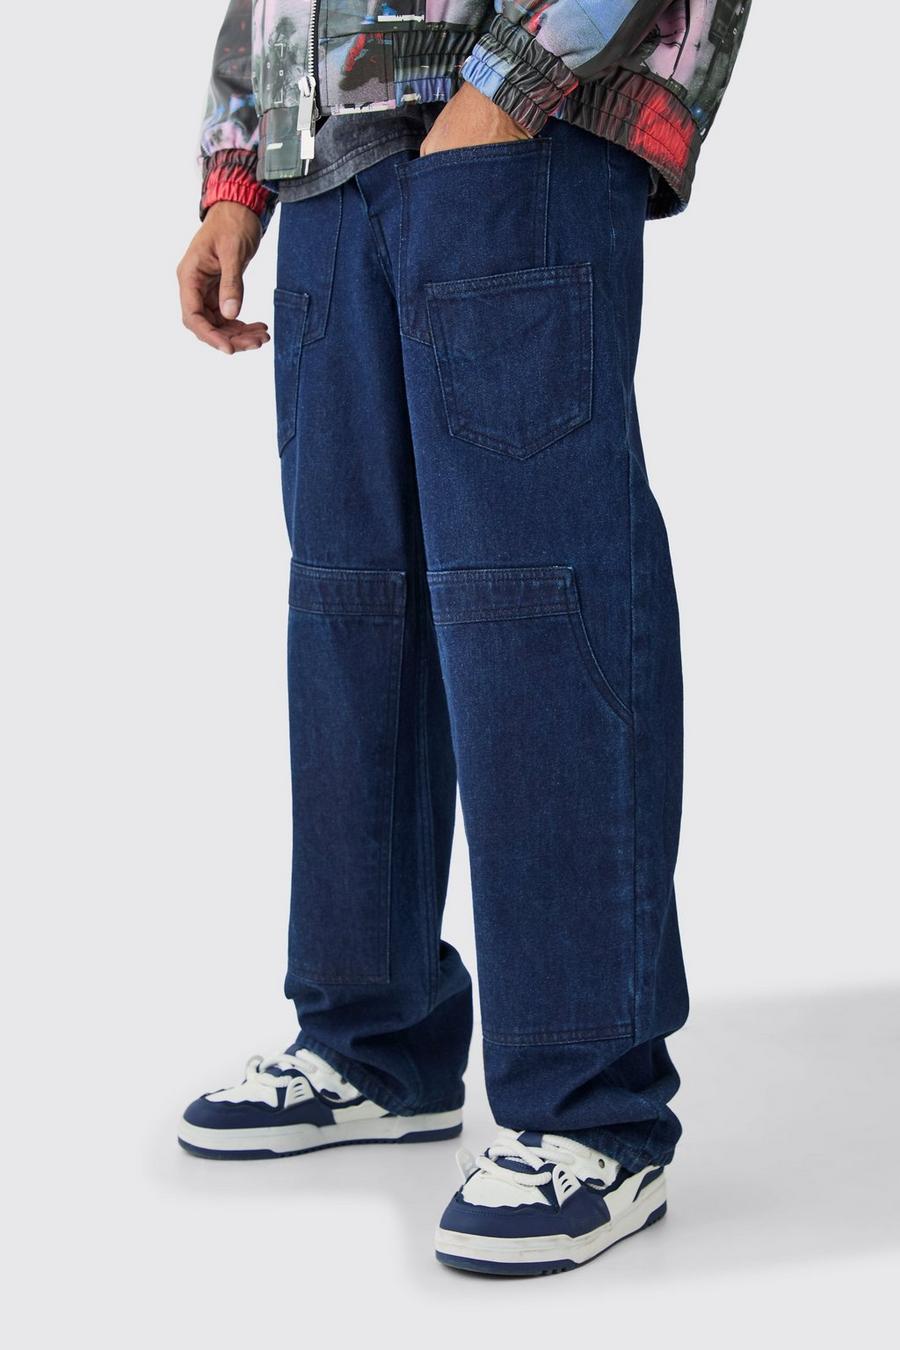 Lockere Jeans mit Taschen, Indigo